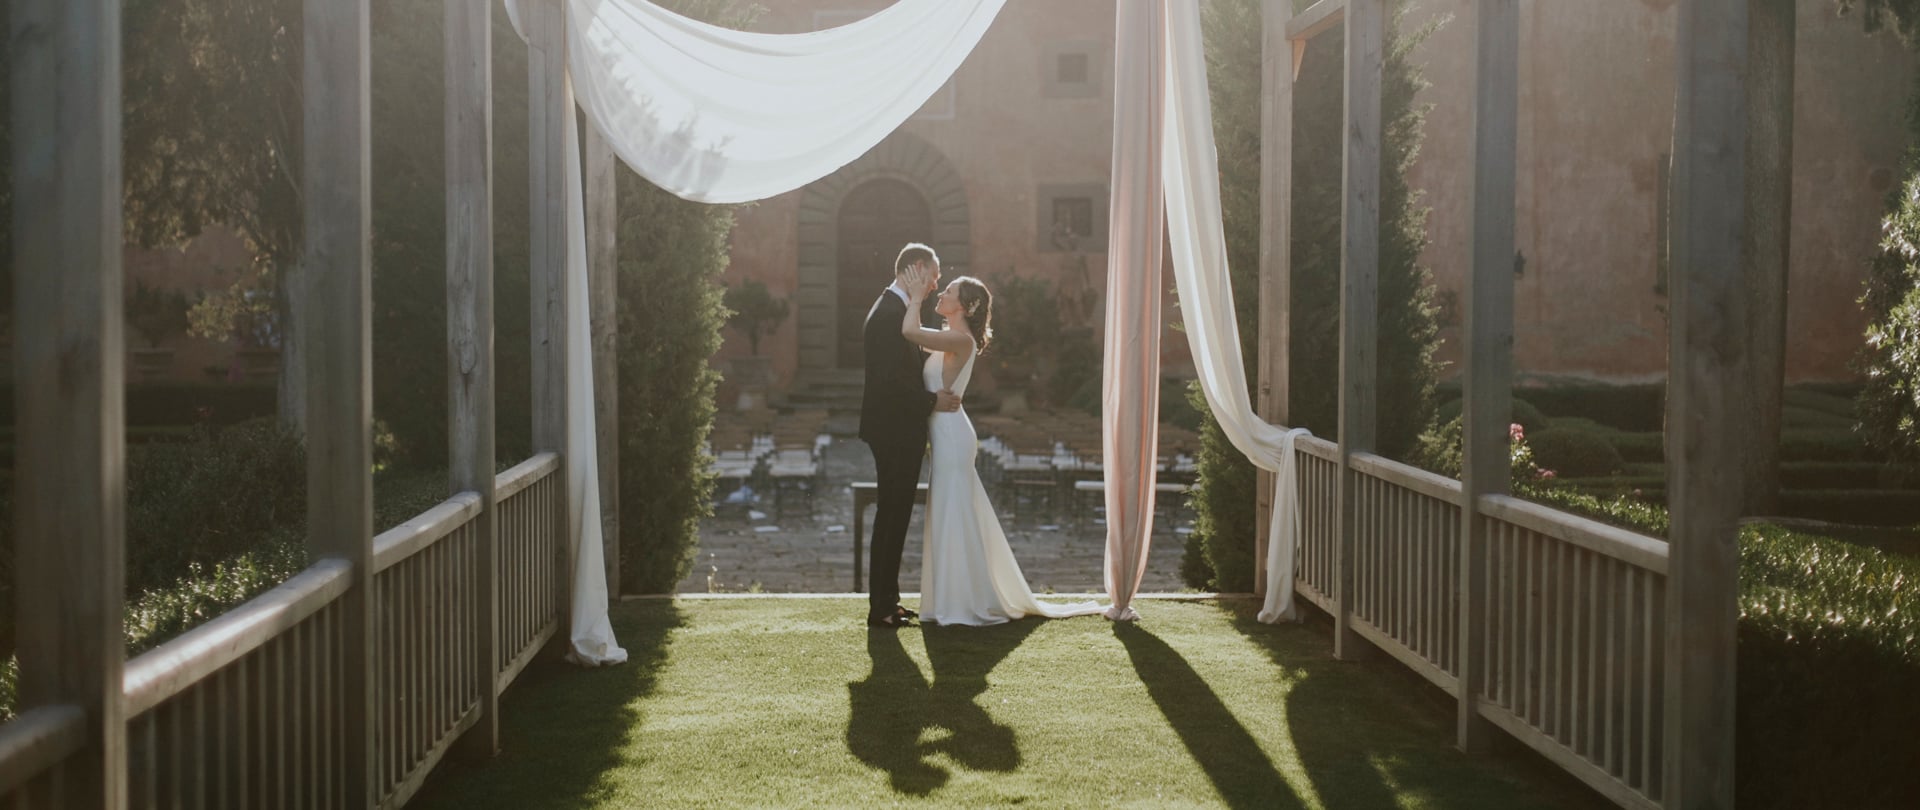 Celeste & Martin Wedding Video Filmed atTuscany,Italy